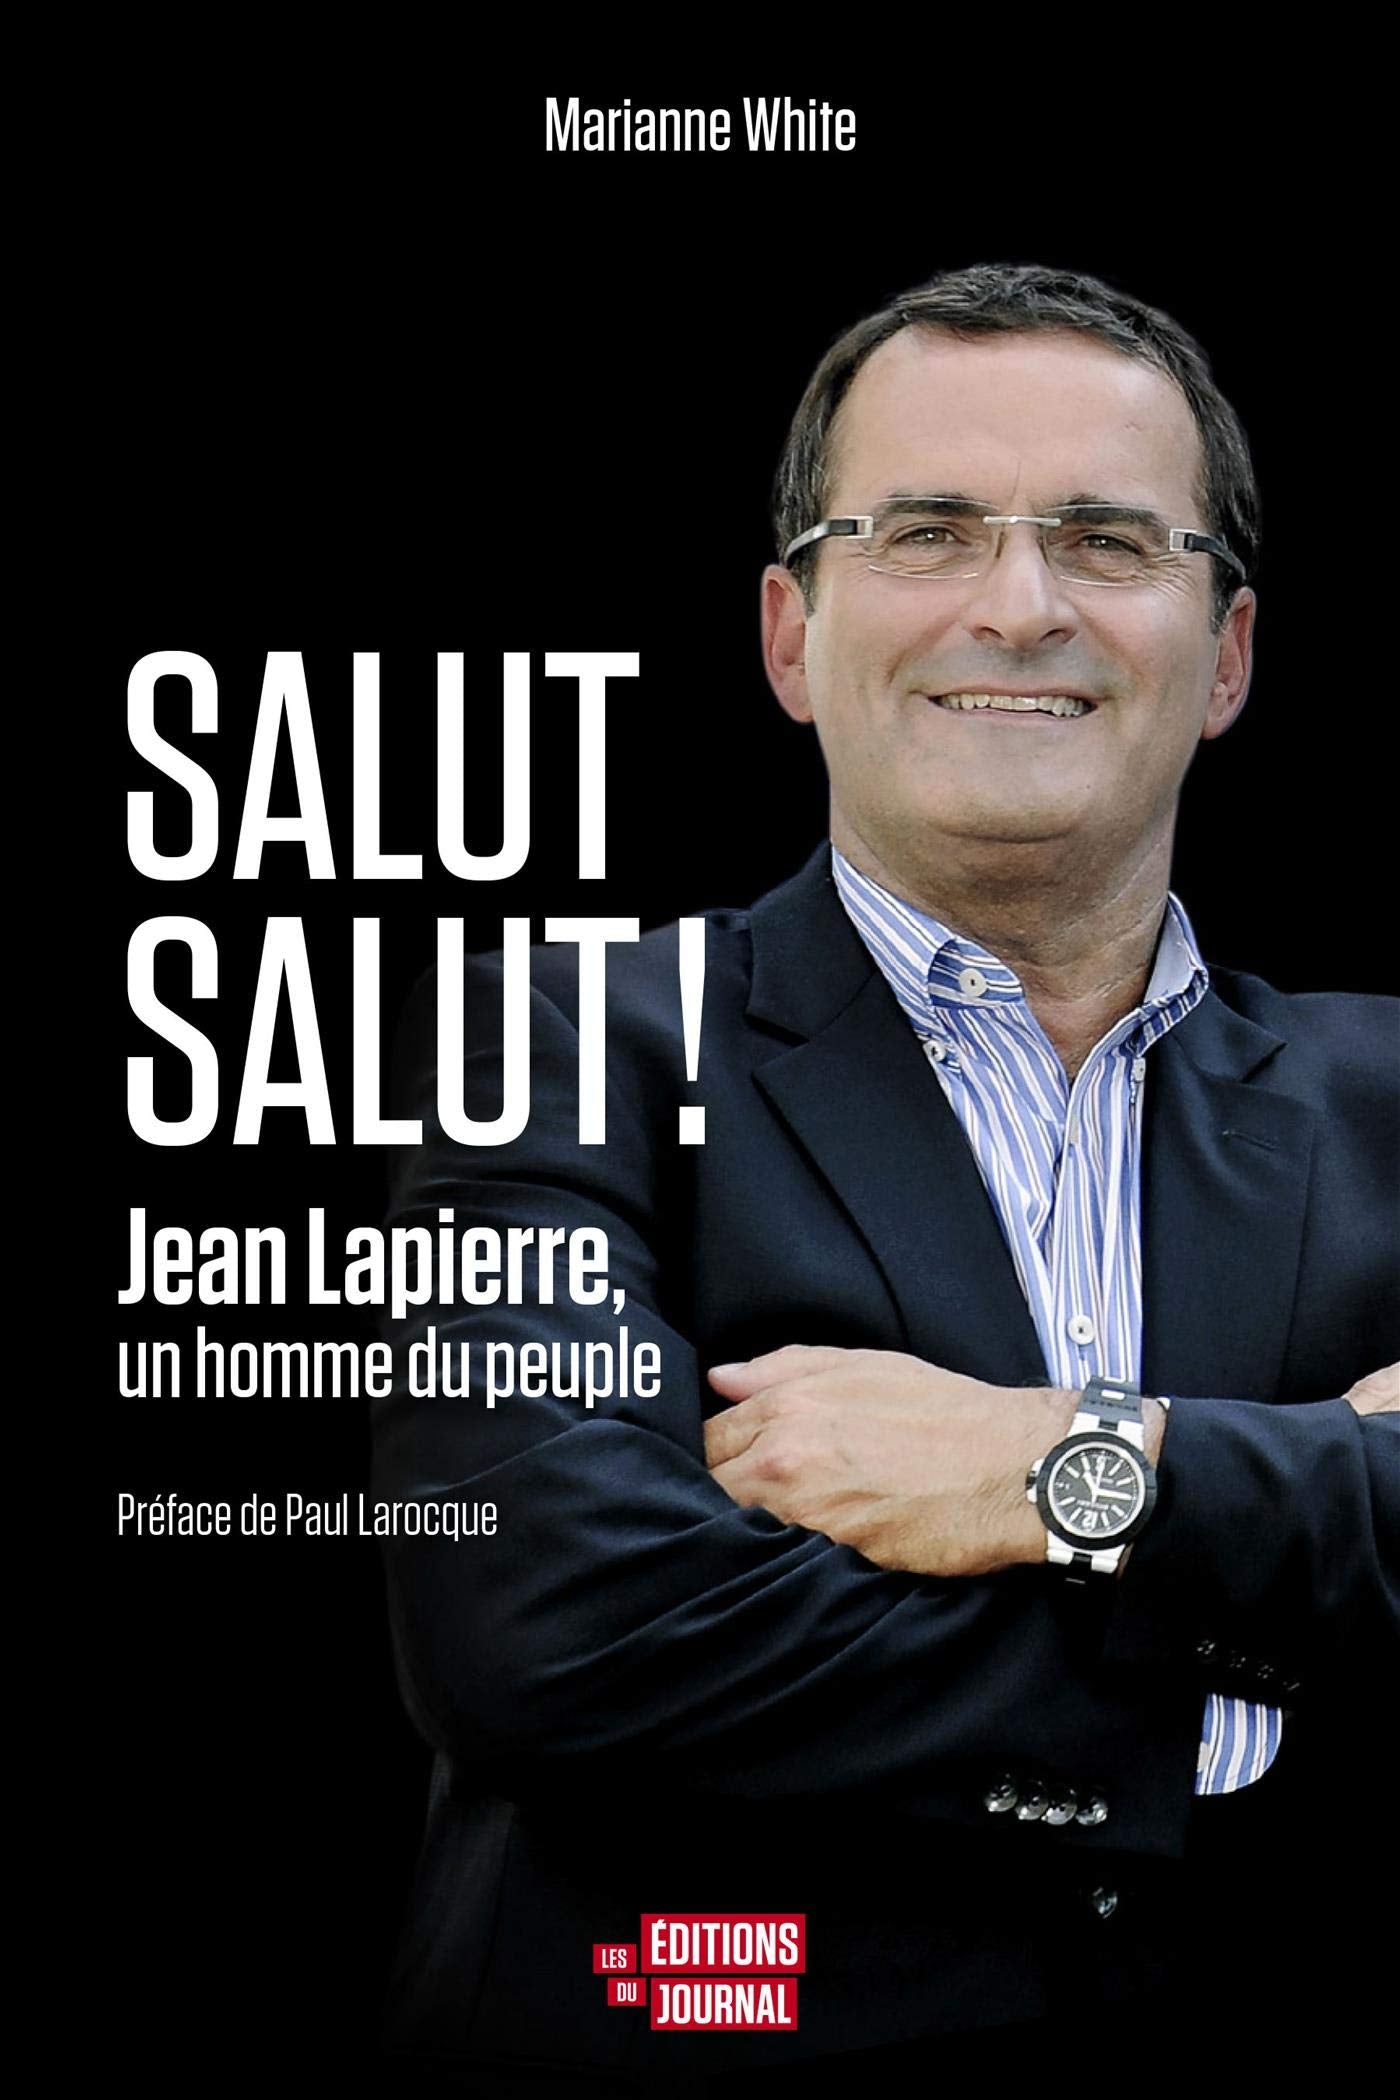 Salut salut!: Jean Lapierre, un homme du peuple - Marianne White